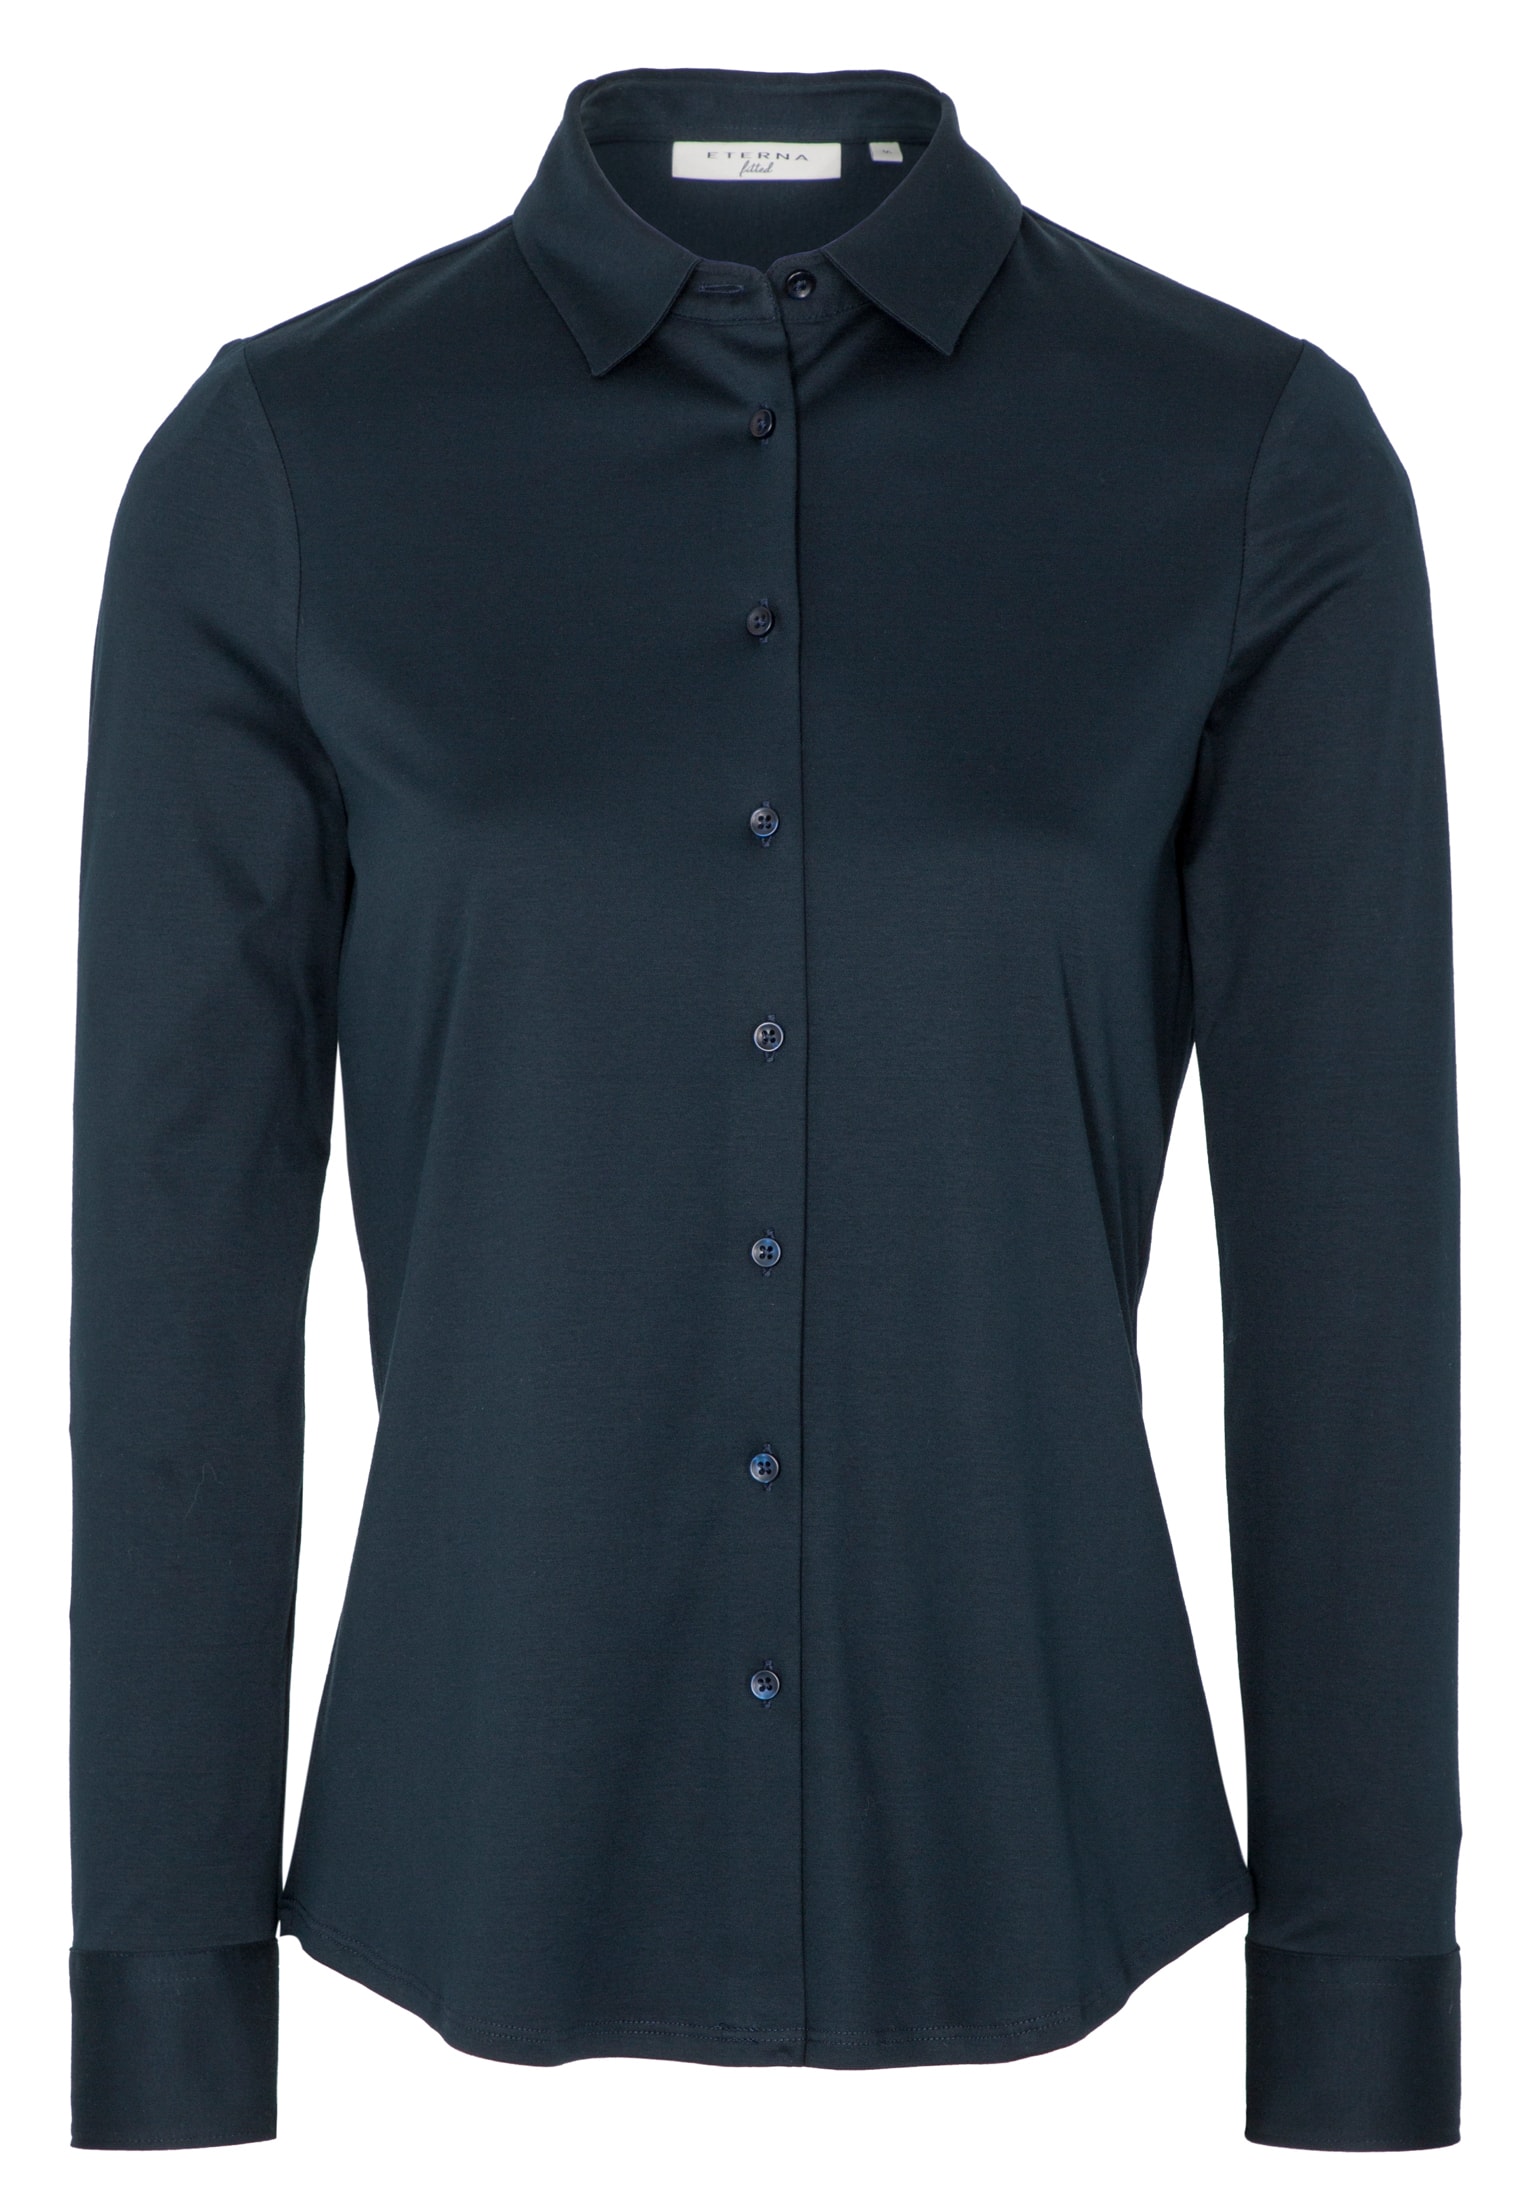 Jersey Shirt Bluse | | navy 2BL00229-01-91-44-1/1 navy | Langarm | unifarben 44 in